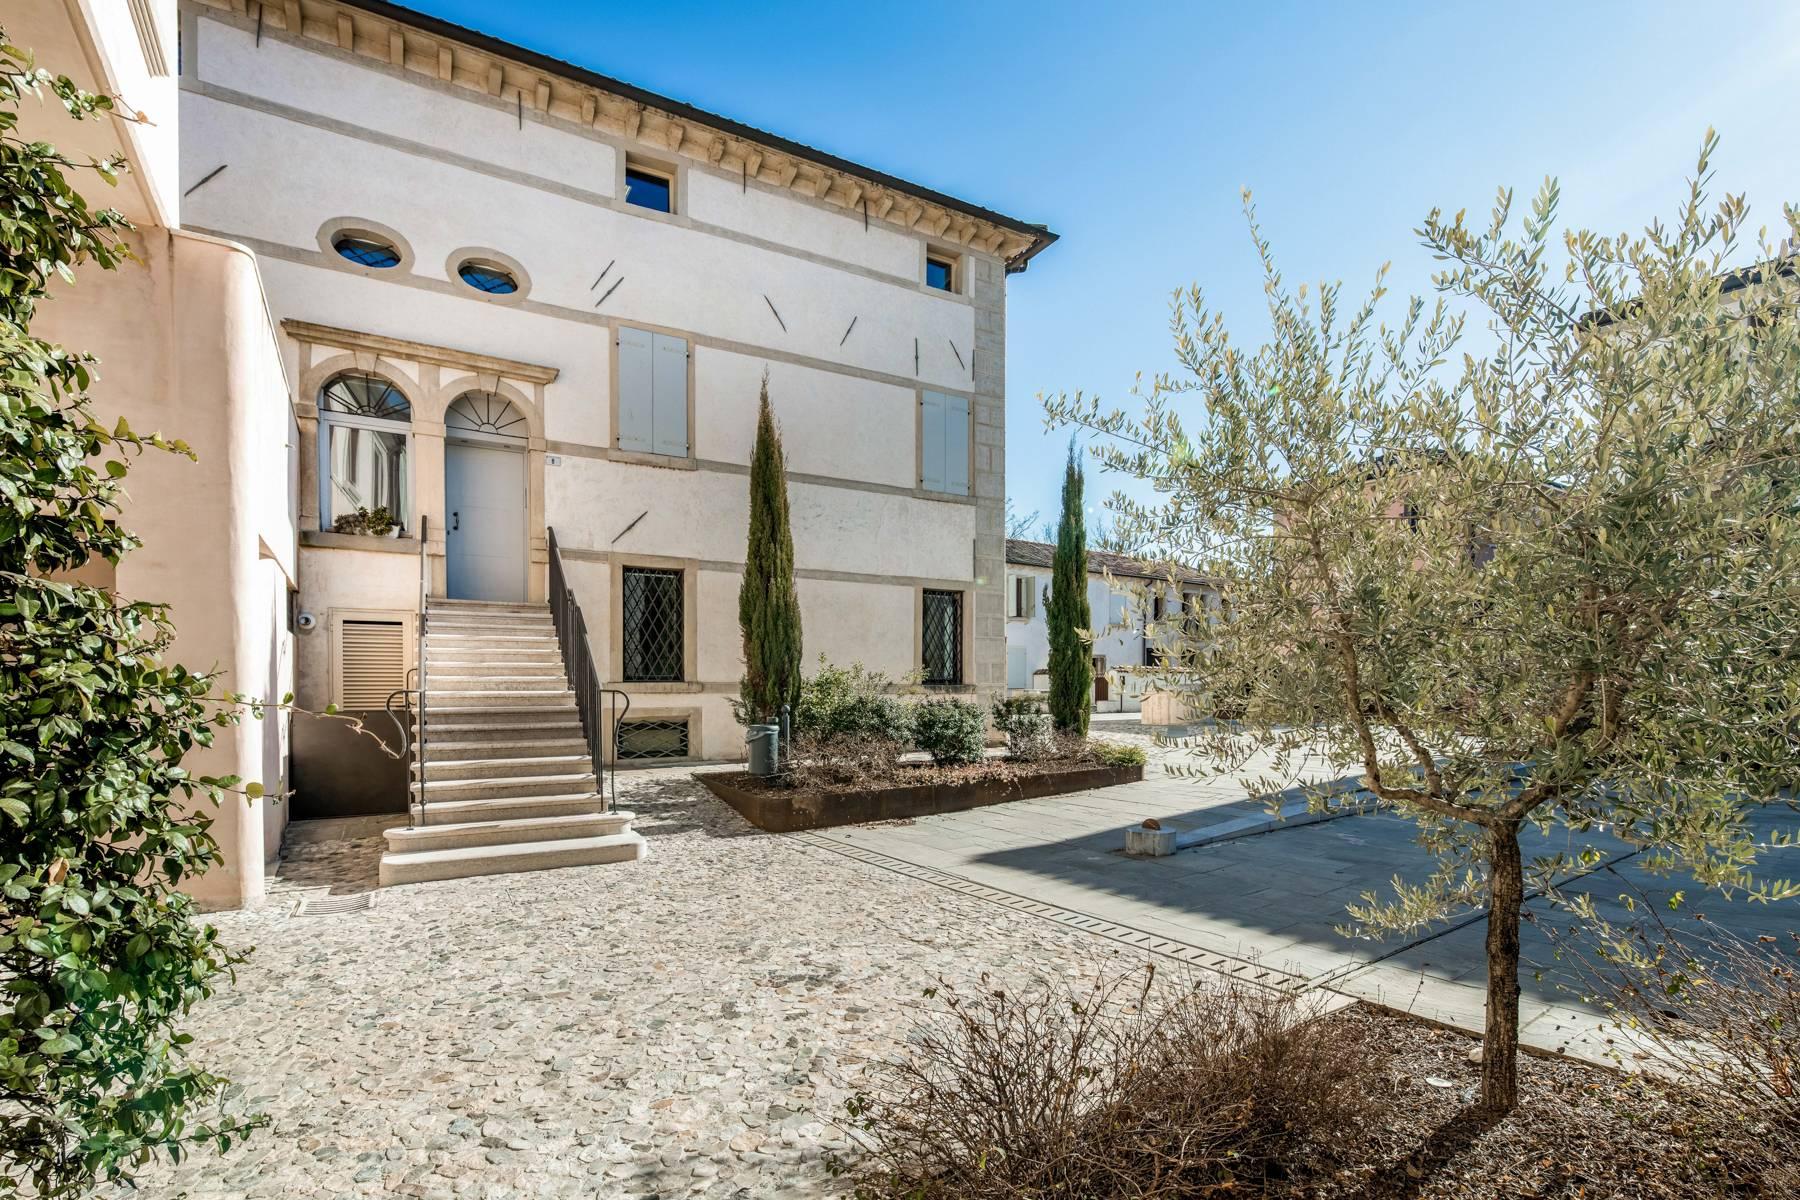 Penthouse de luxe dans une villa vénitienne du 17ème siècle entièrement rénovée - 24